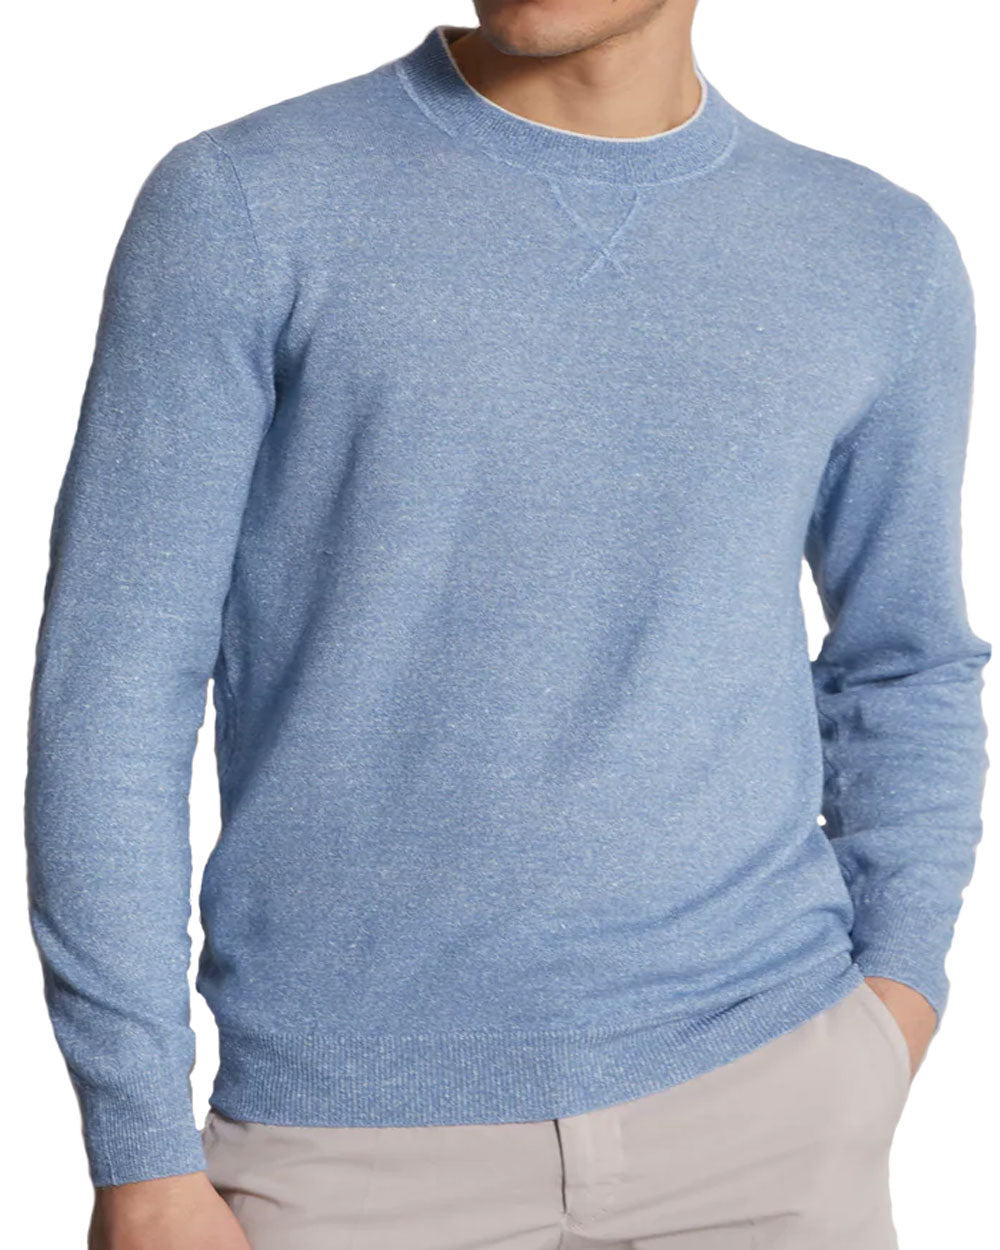 Blue Bicolor Sweater